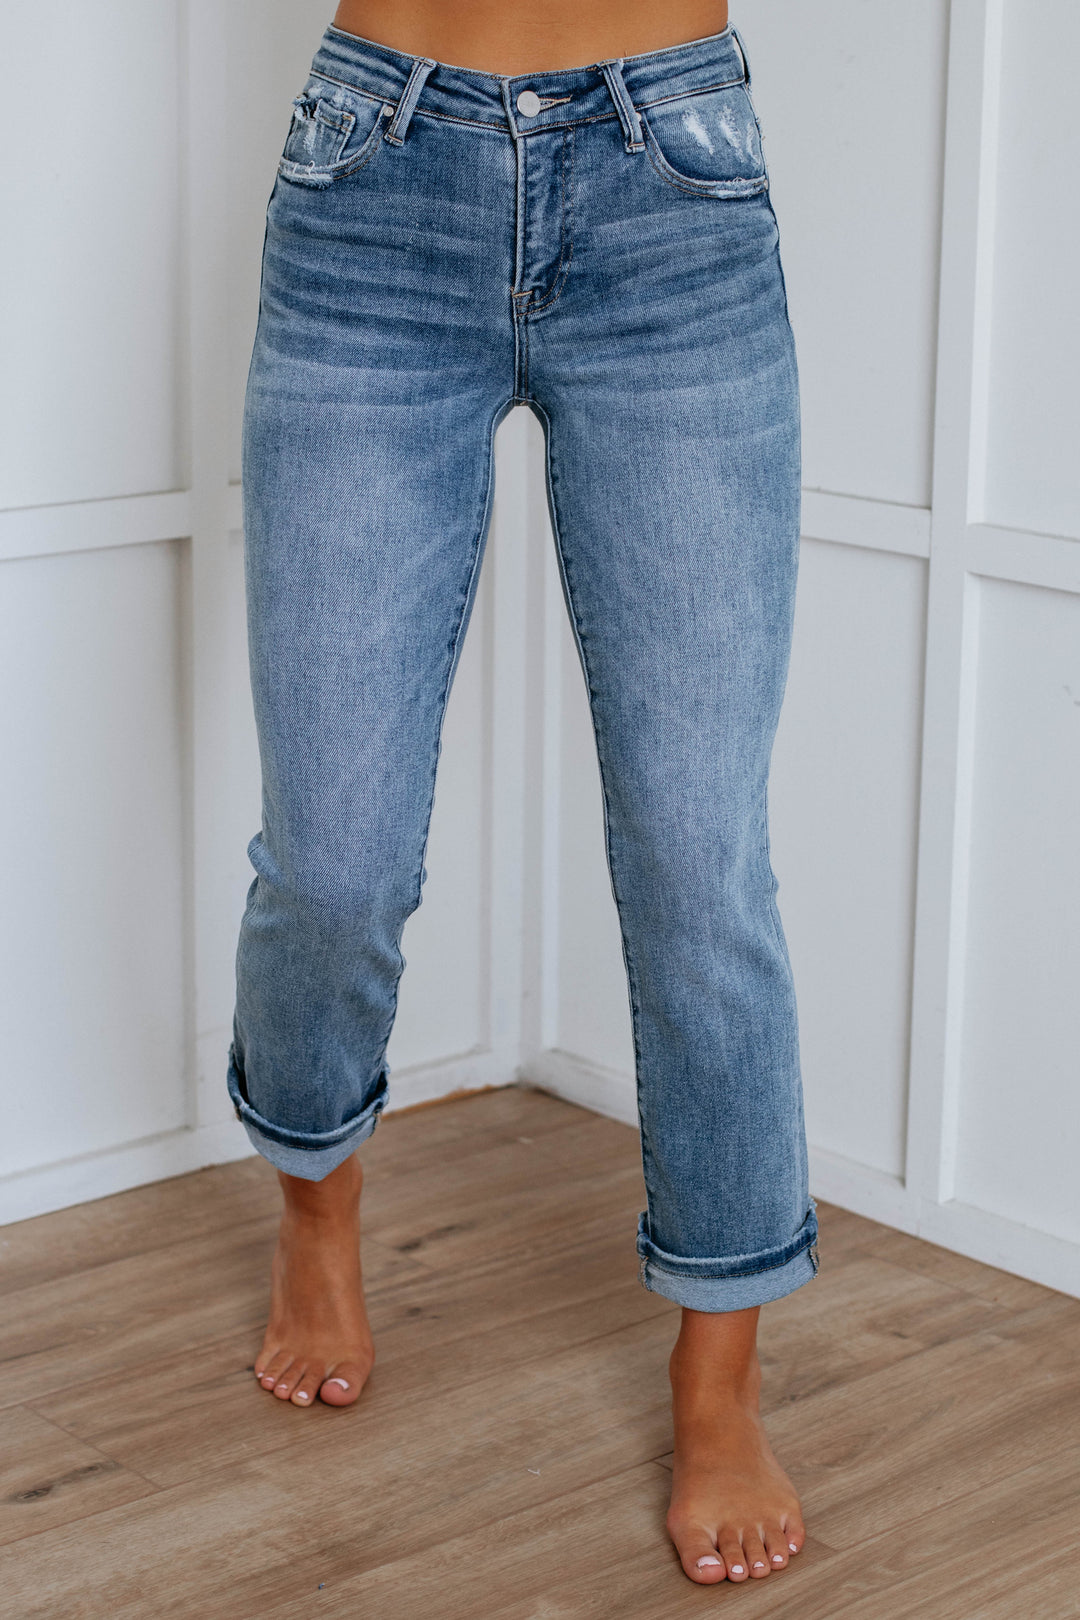 Sofia Risen Jeans